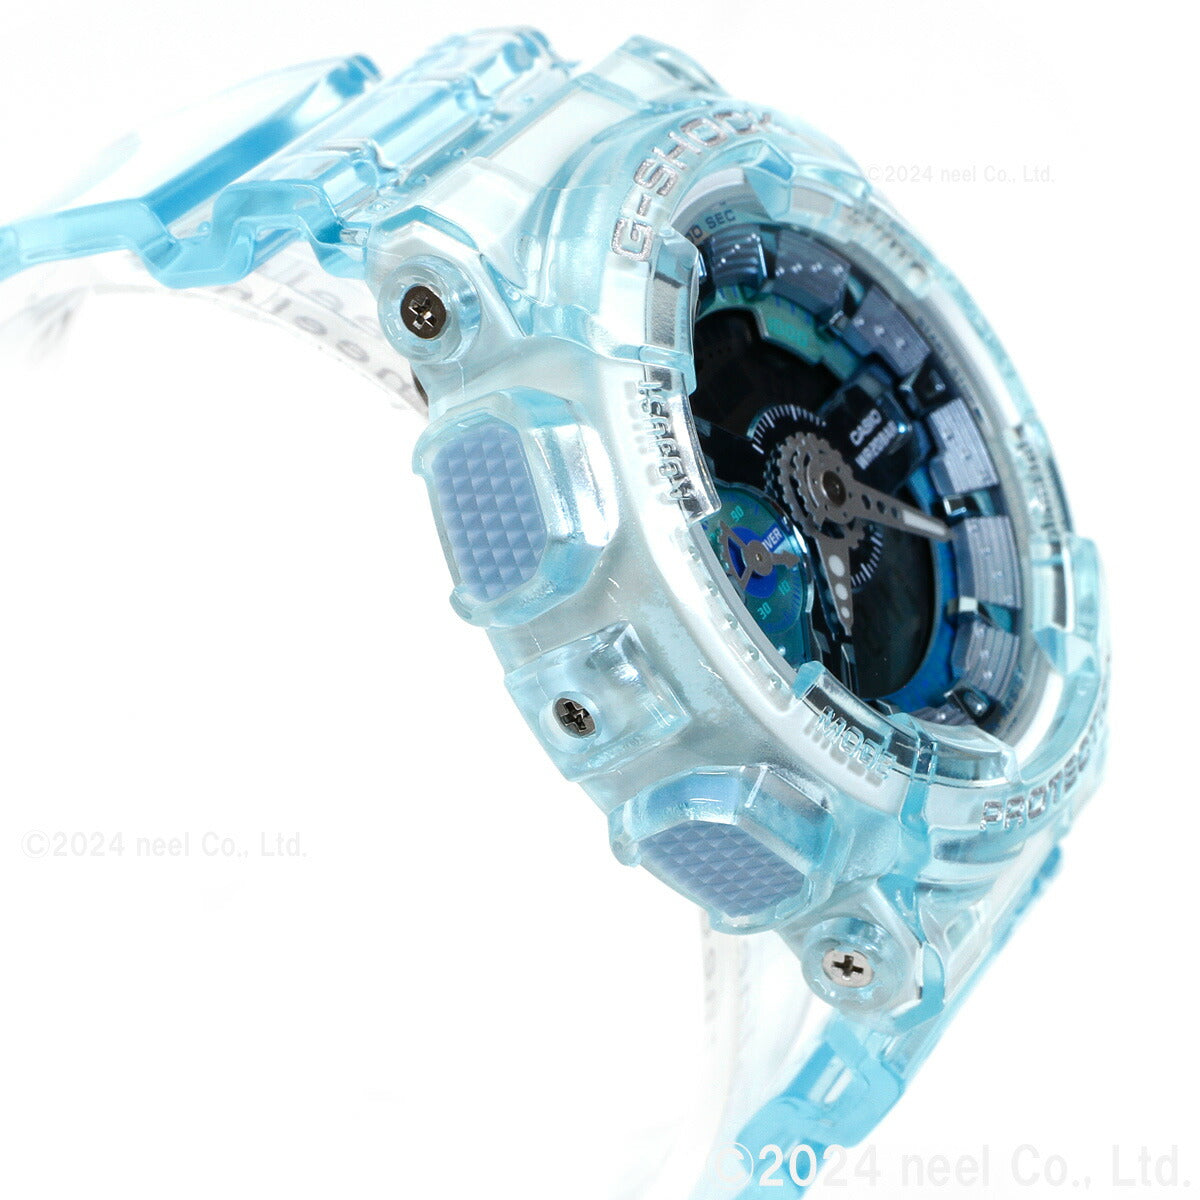 G-SHOCK カシオ Gショック CASIO オンライン限定モデル 腕時計 メンズ レディース GMA-S110VW-2AJF GA-110 小型化・薄型化モデル クリアスケルトン ブルーグリーン【2024 新作】